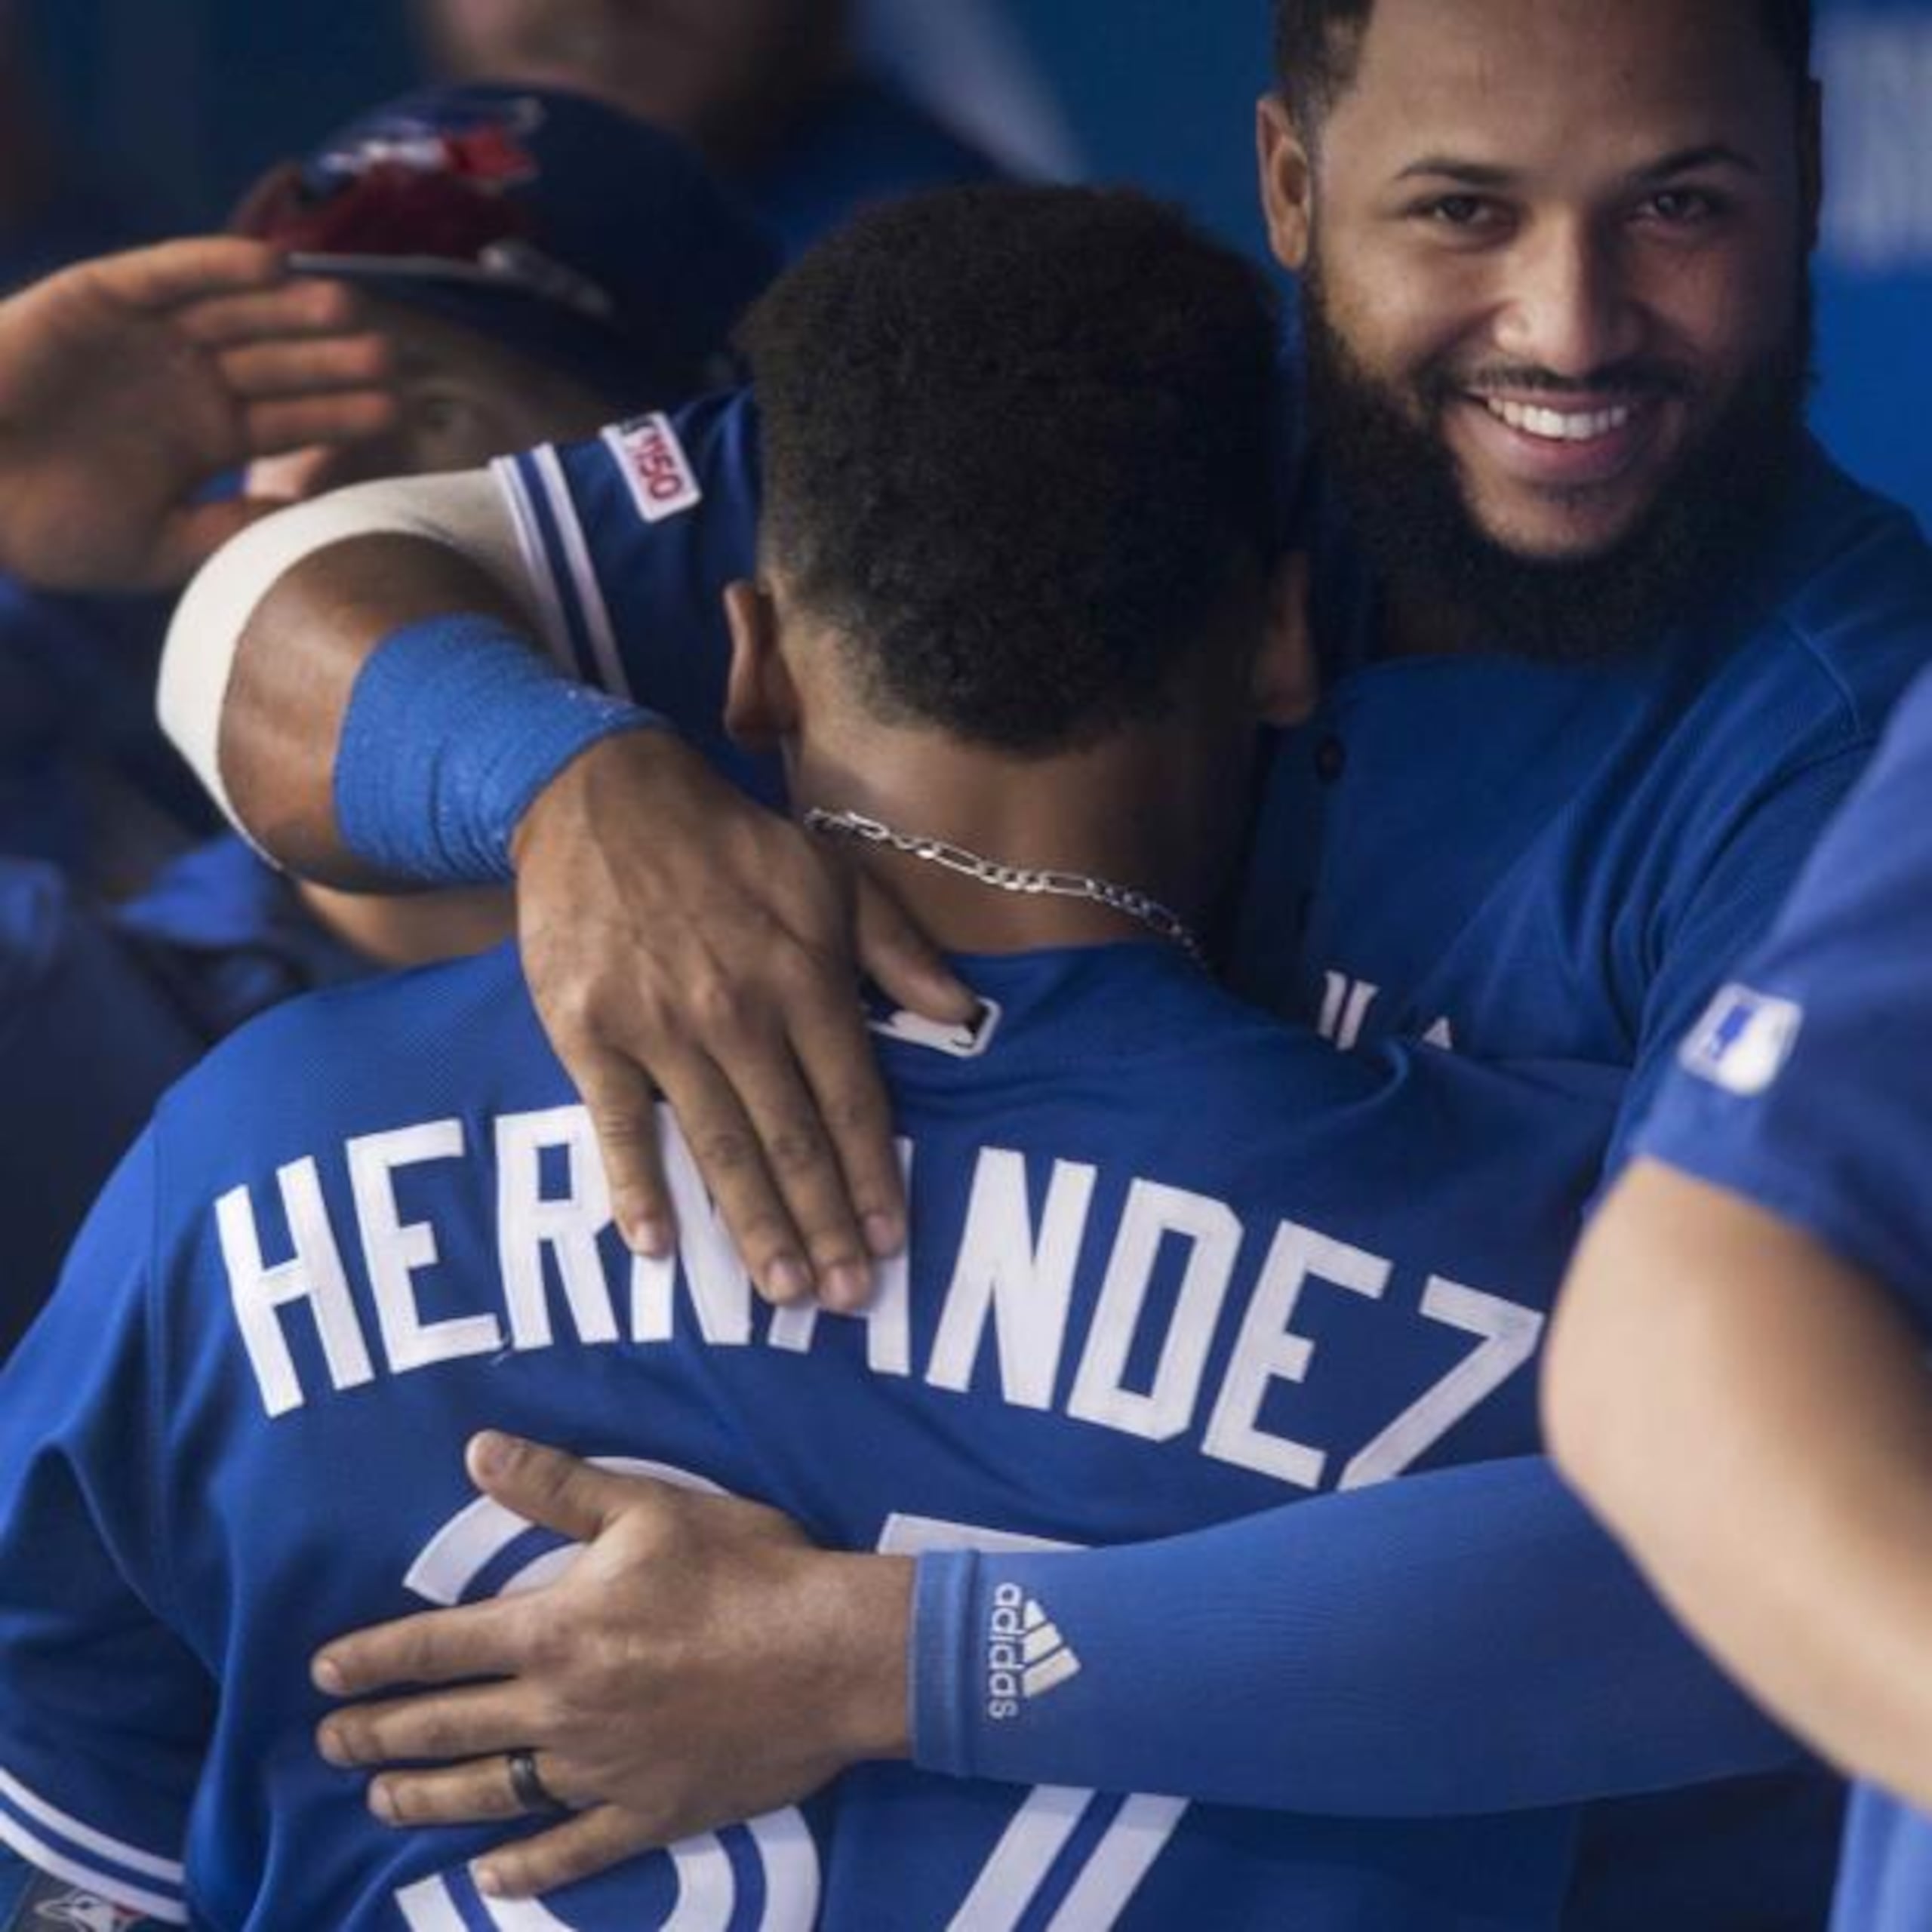 El dominicano Teoscar Hernández, de los Azulejos de Toronto, es abrazado por su compatriota y compañero Richard Ureña, luego de batear un jonrón ante los Rays de Tampa Bay, el sábado.  (AP)